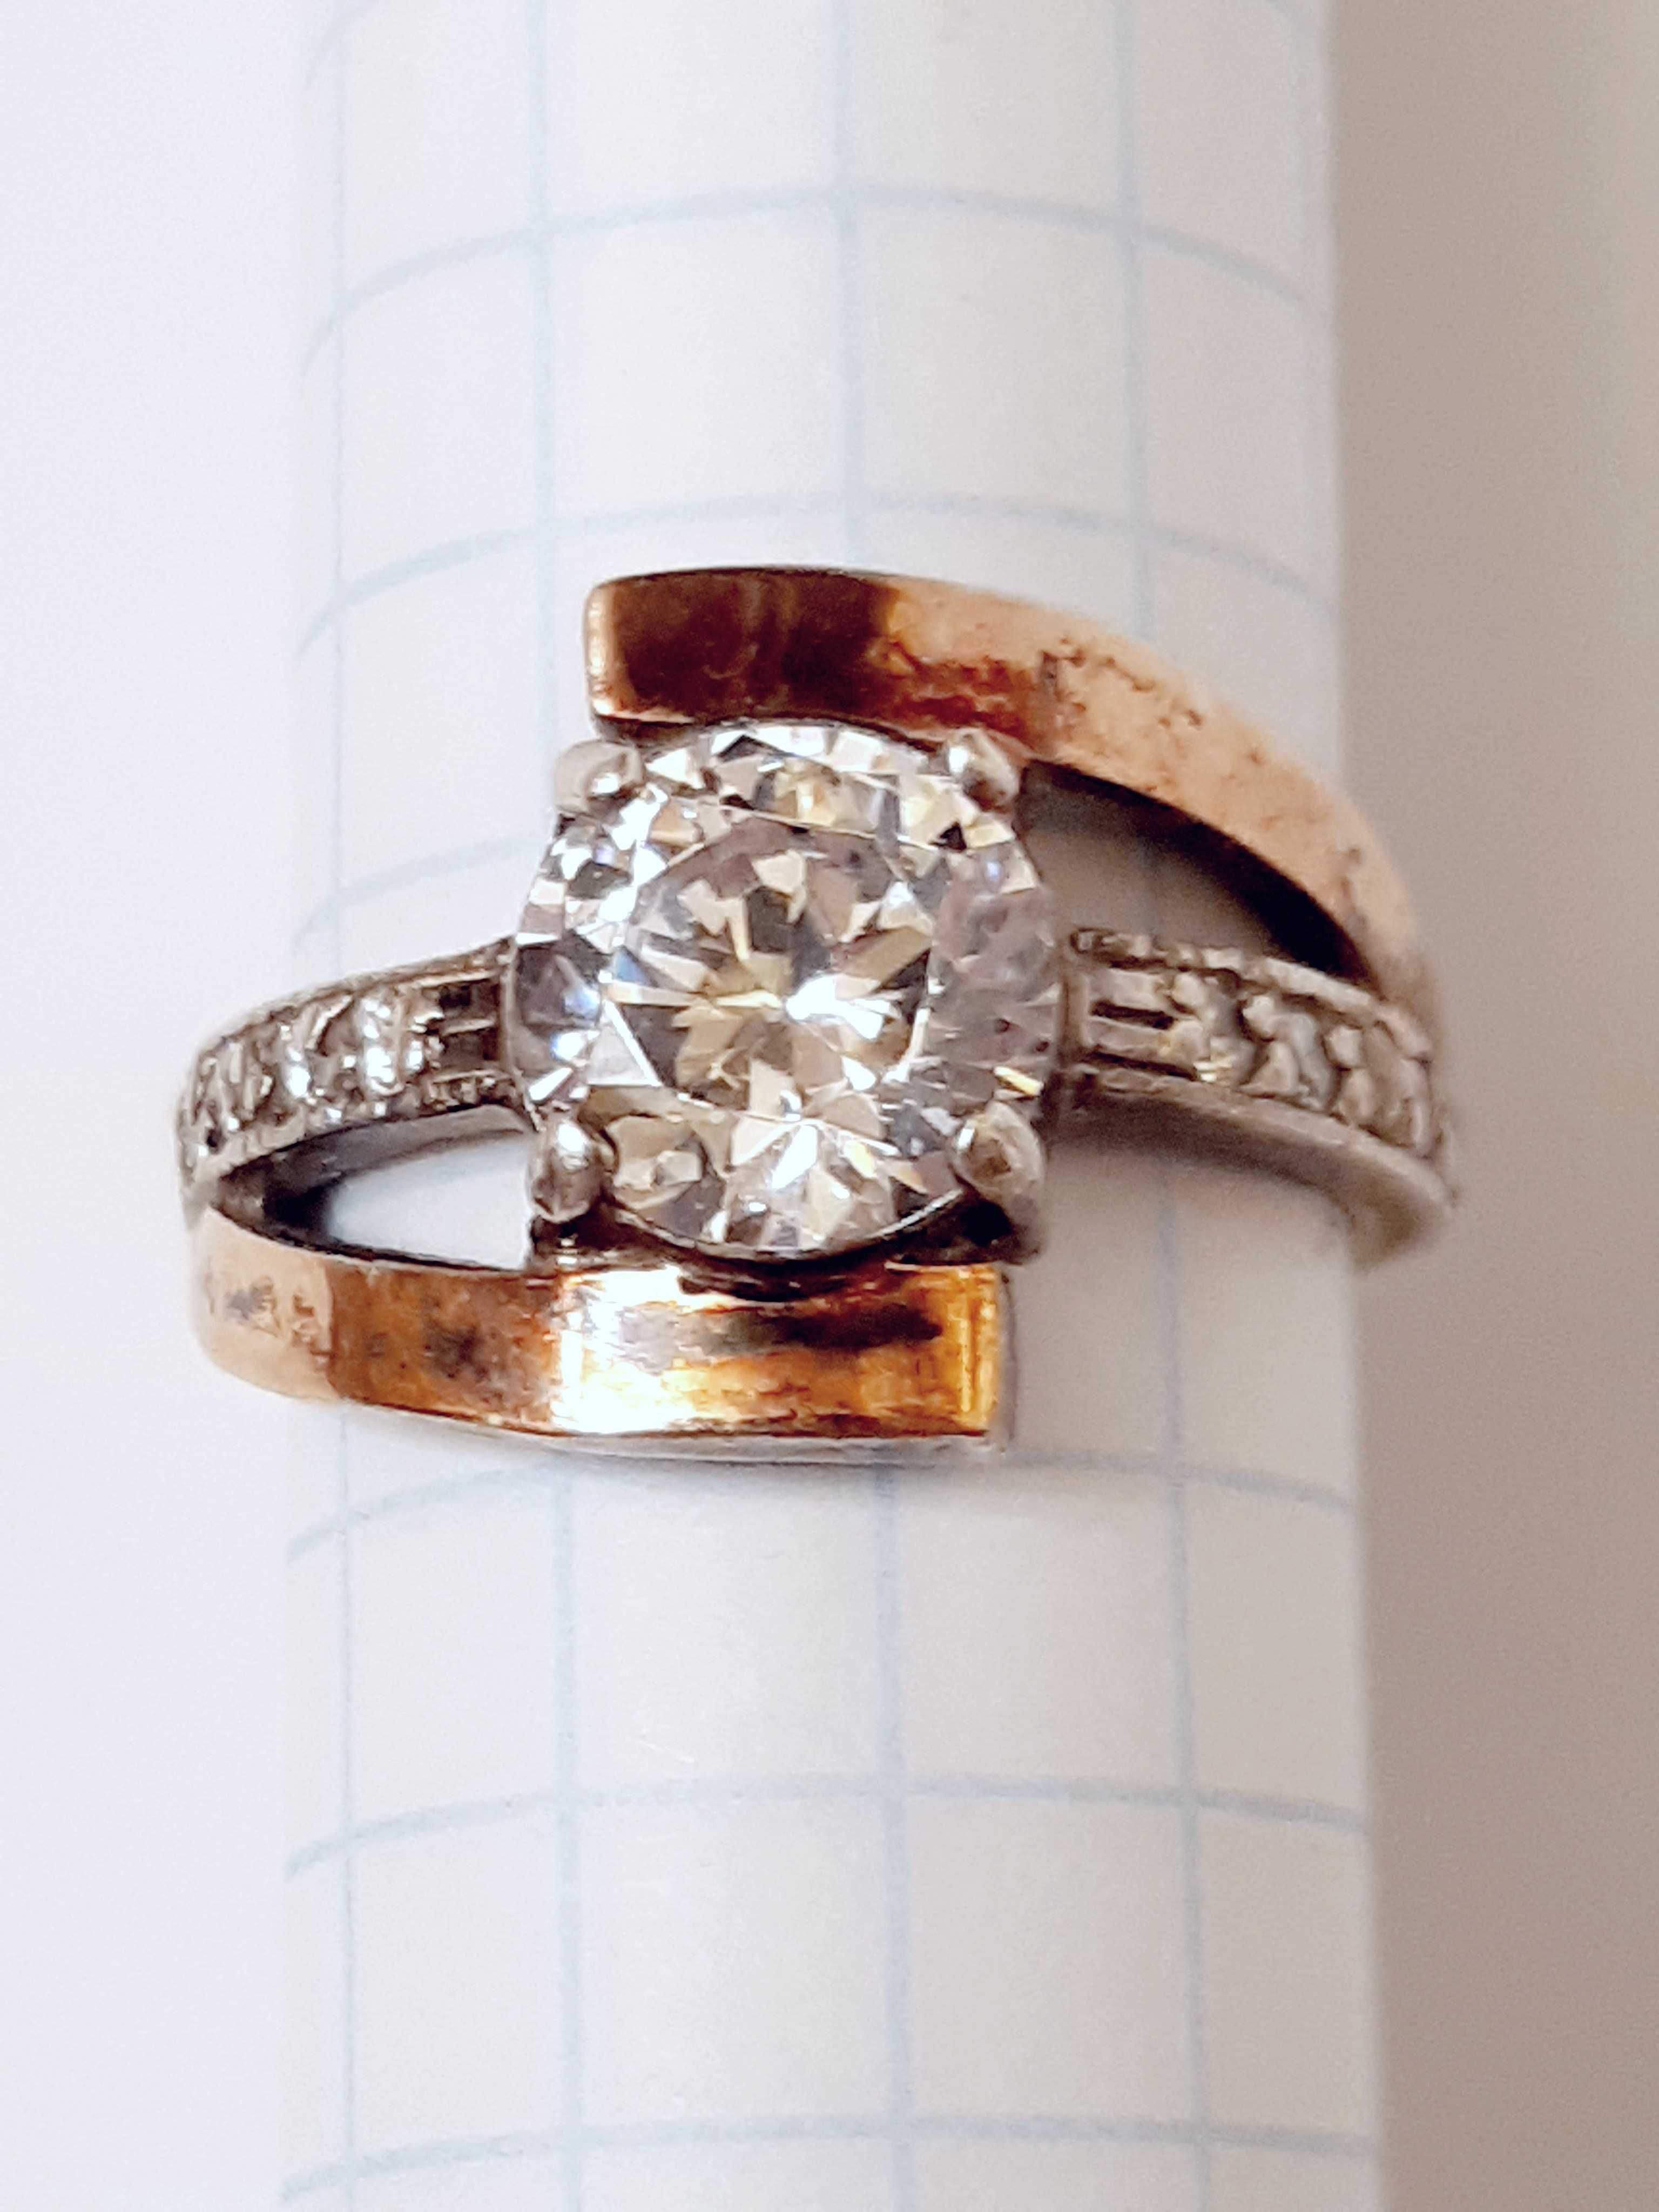 Красивое женское кольцо ссср, 925 пр, позолота